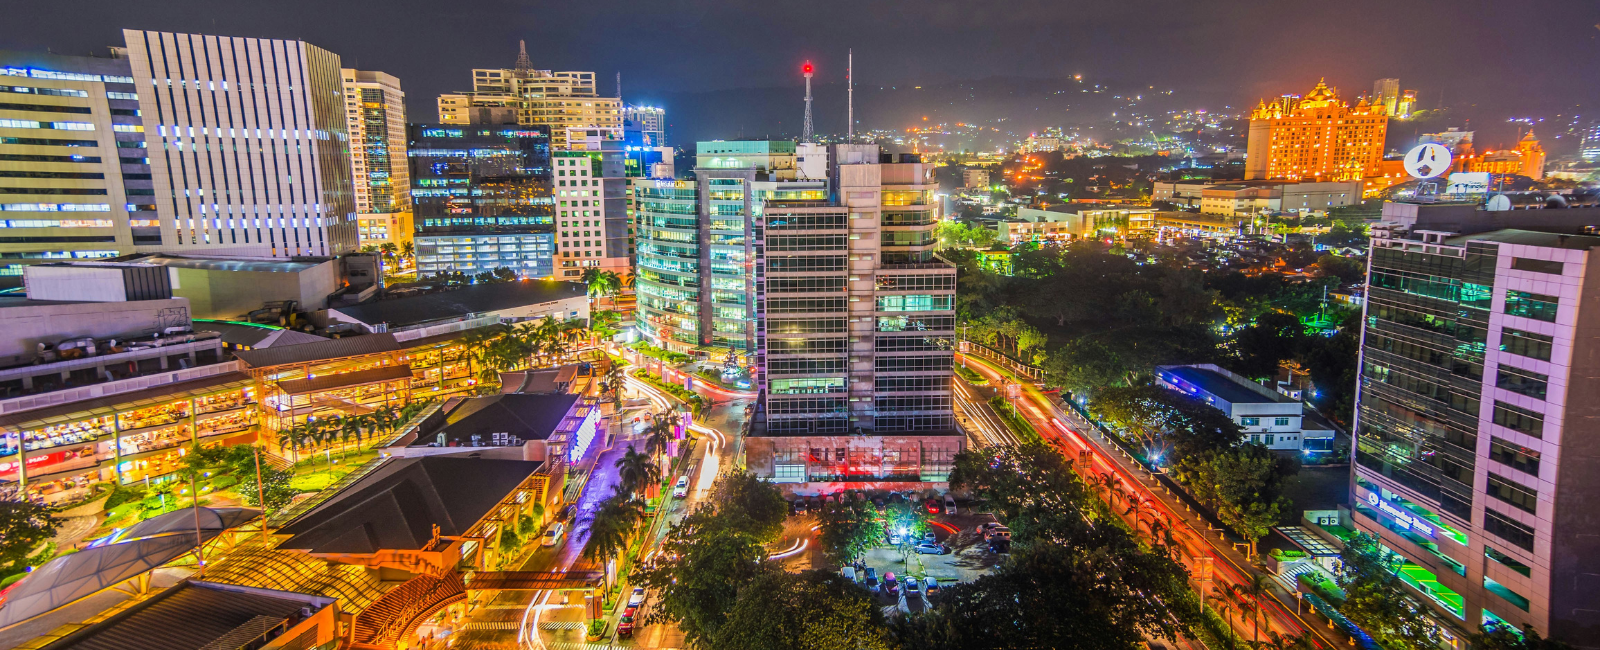 Cebu City lights at night